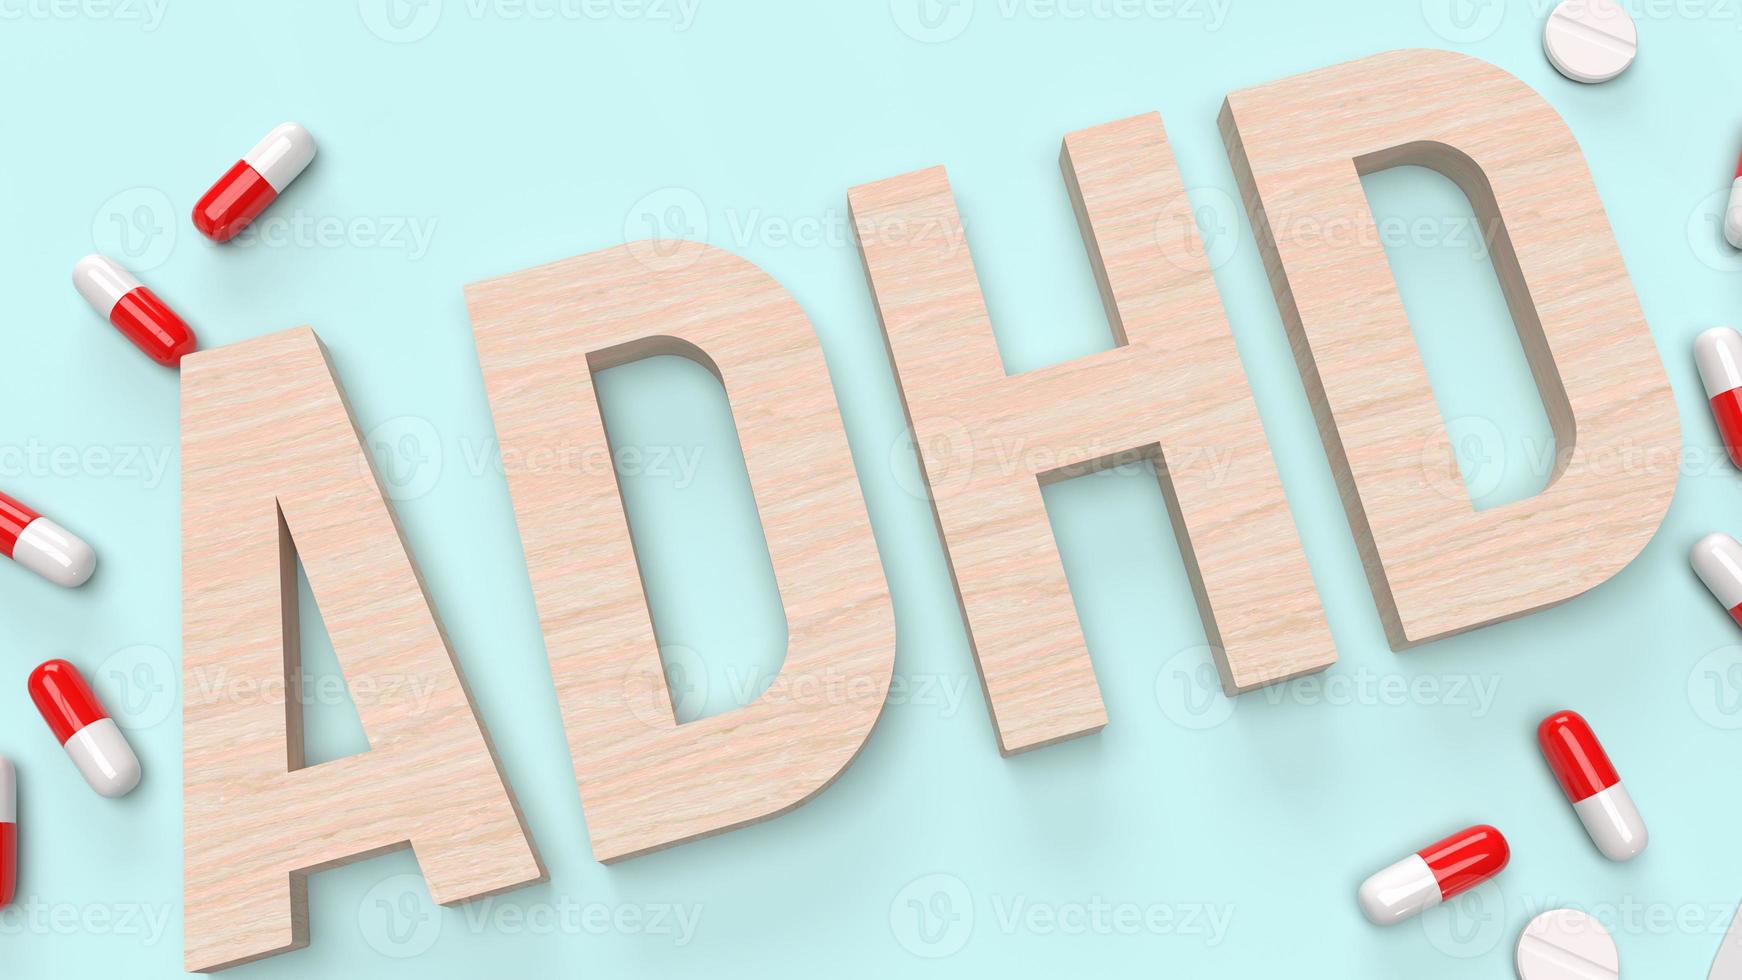 de adhd hout tekst en medicijn voor medische inhoud 3D-rendering foto